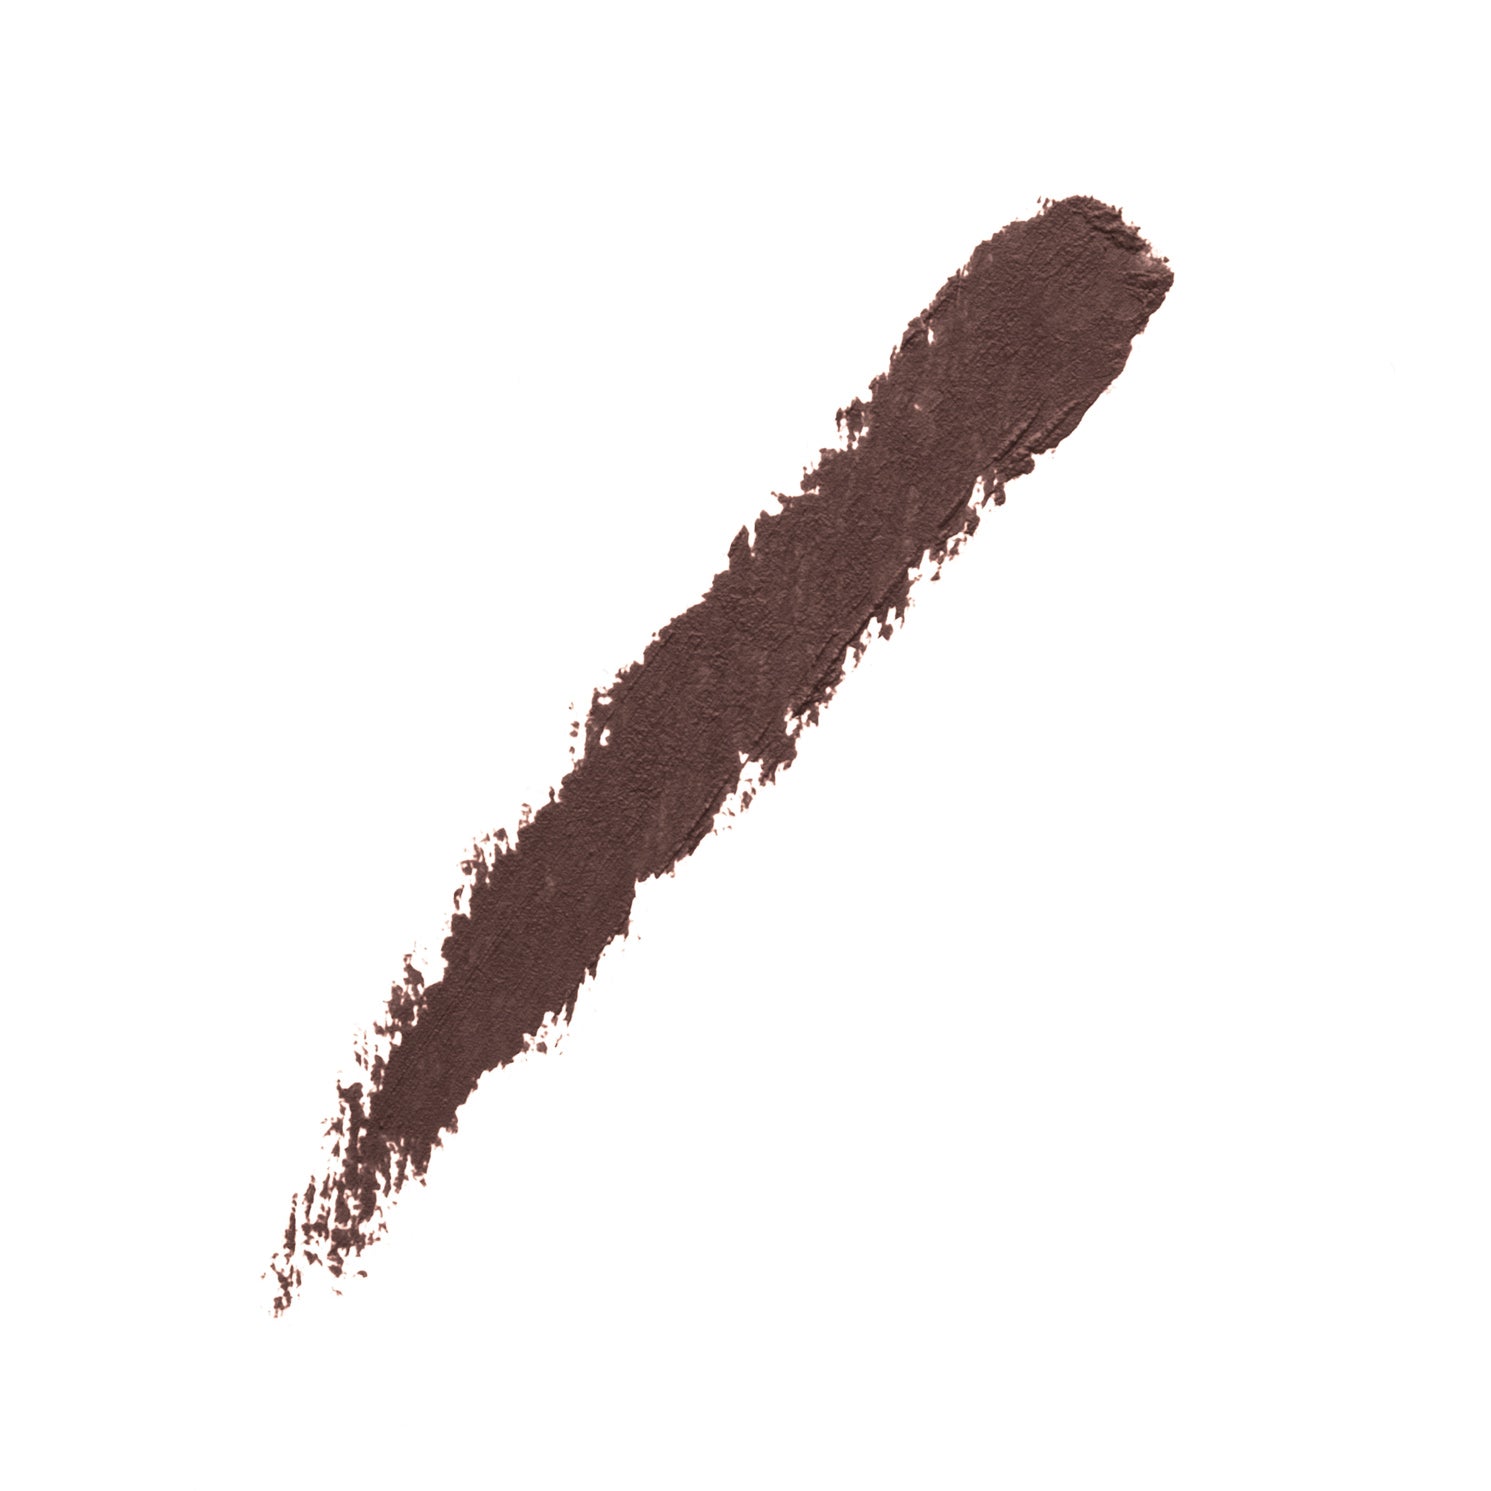 DIABOLIQUE - BROWN - swatch of deep brown creamy lipstick pencil